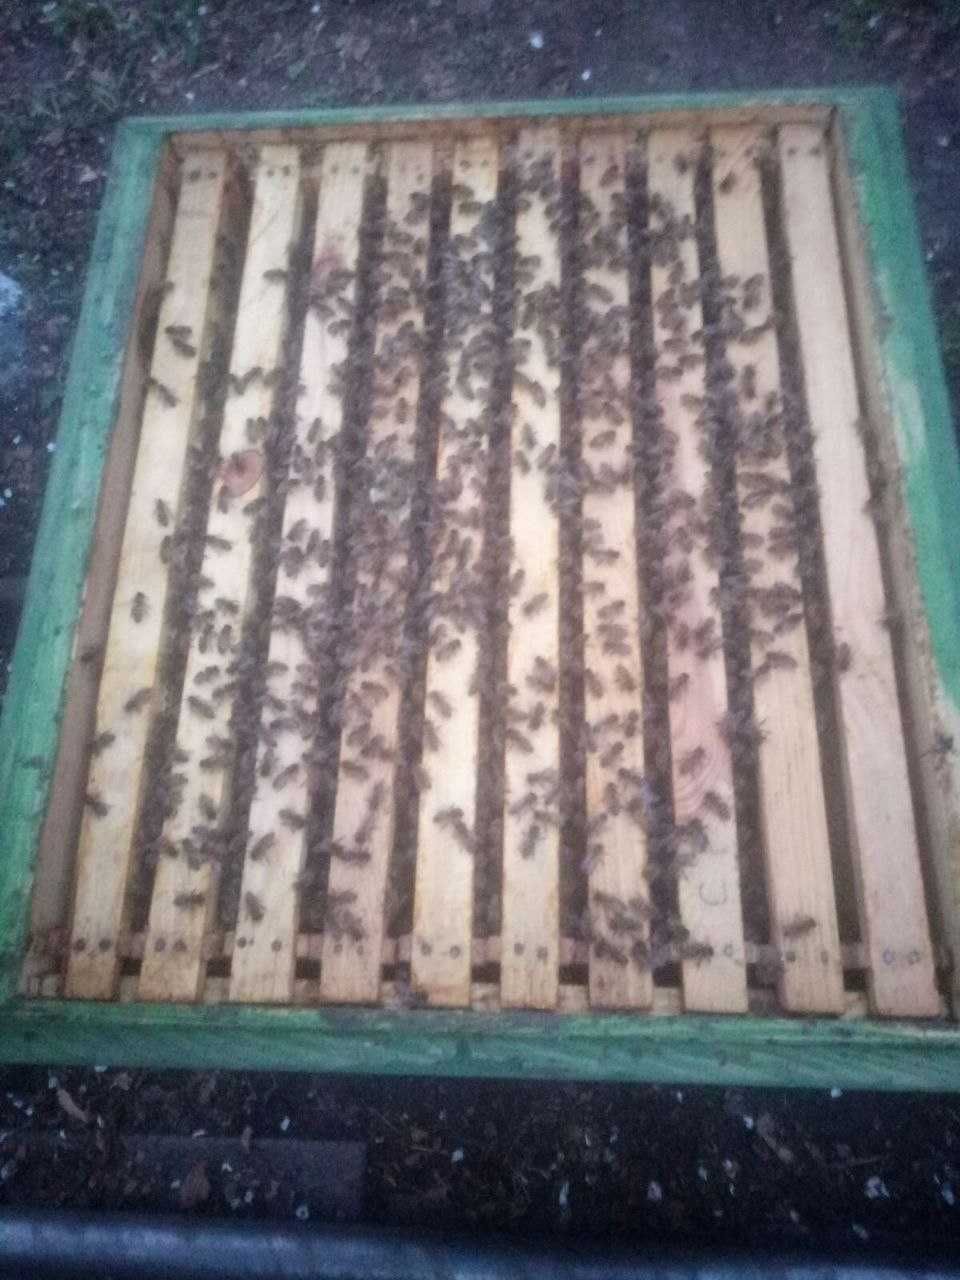 Продам пчёл, Харьков, бджоли Харків